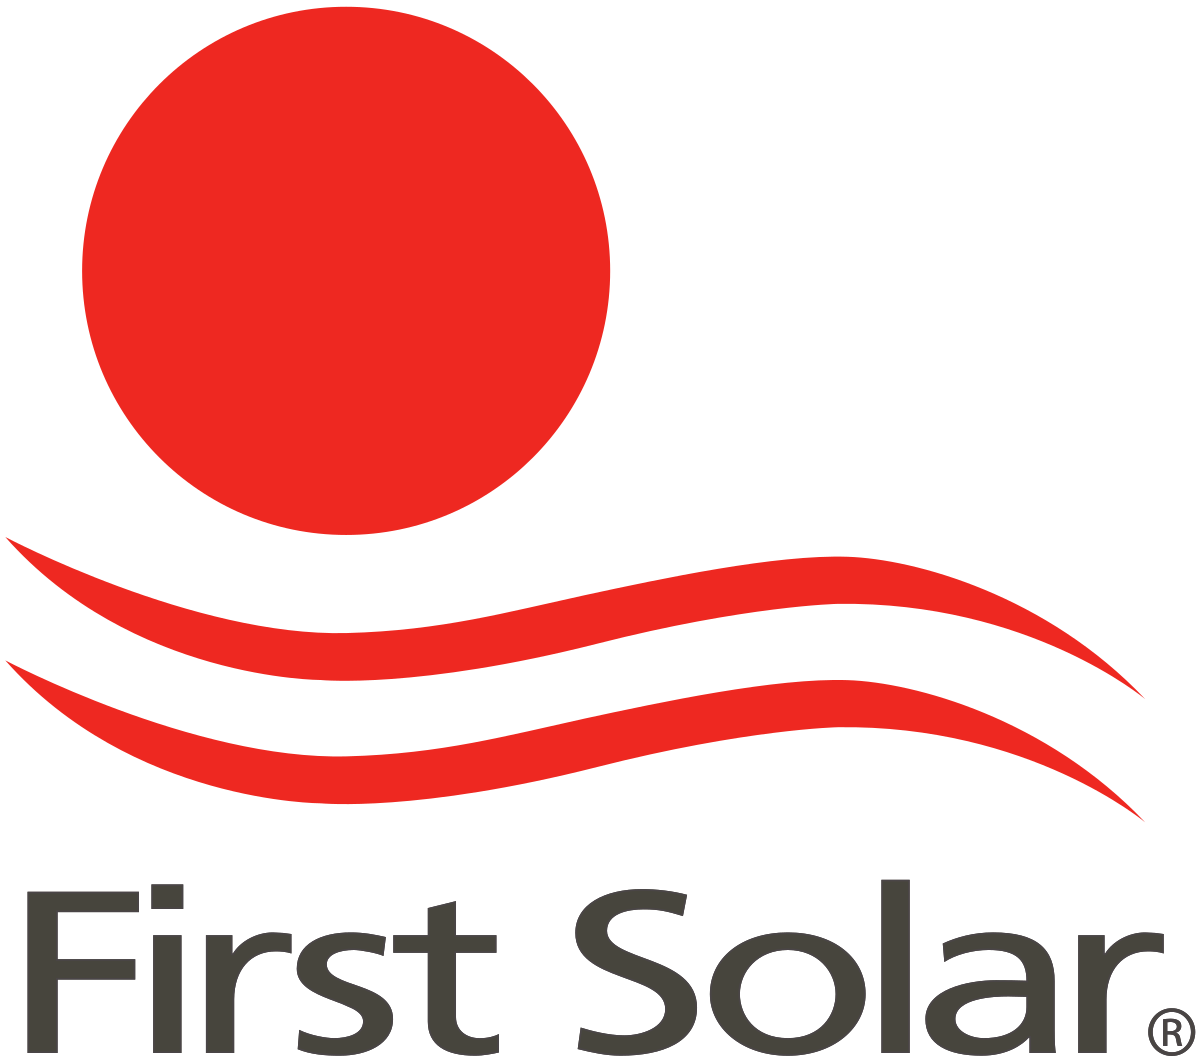 A First Solar felkerült a Zacks legkeresettebb részvényeinek listájára